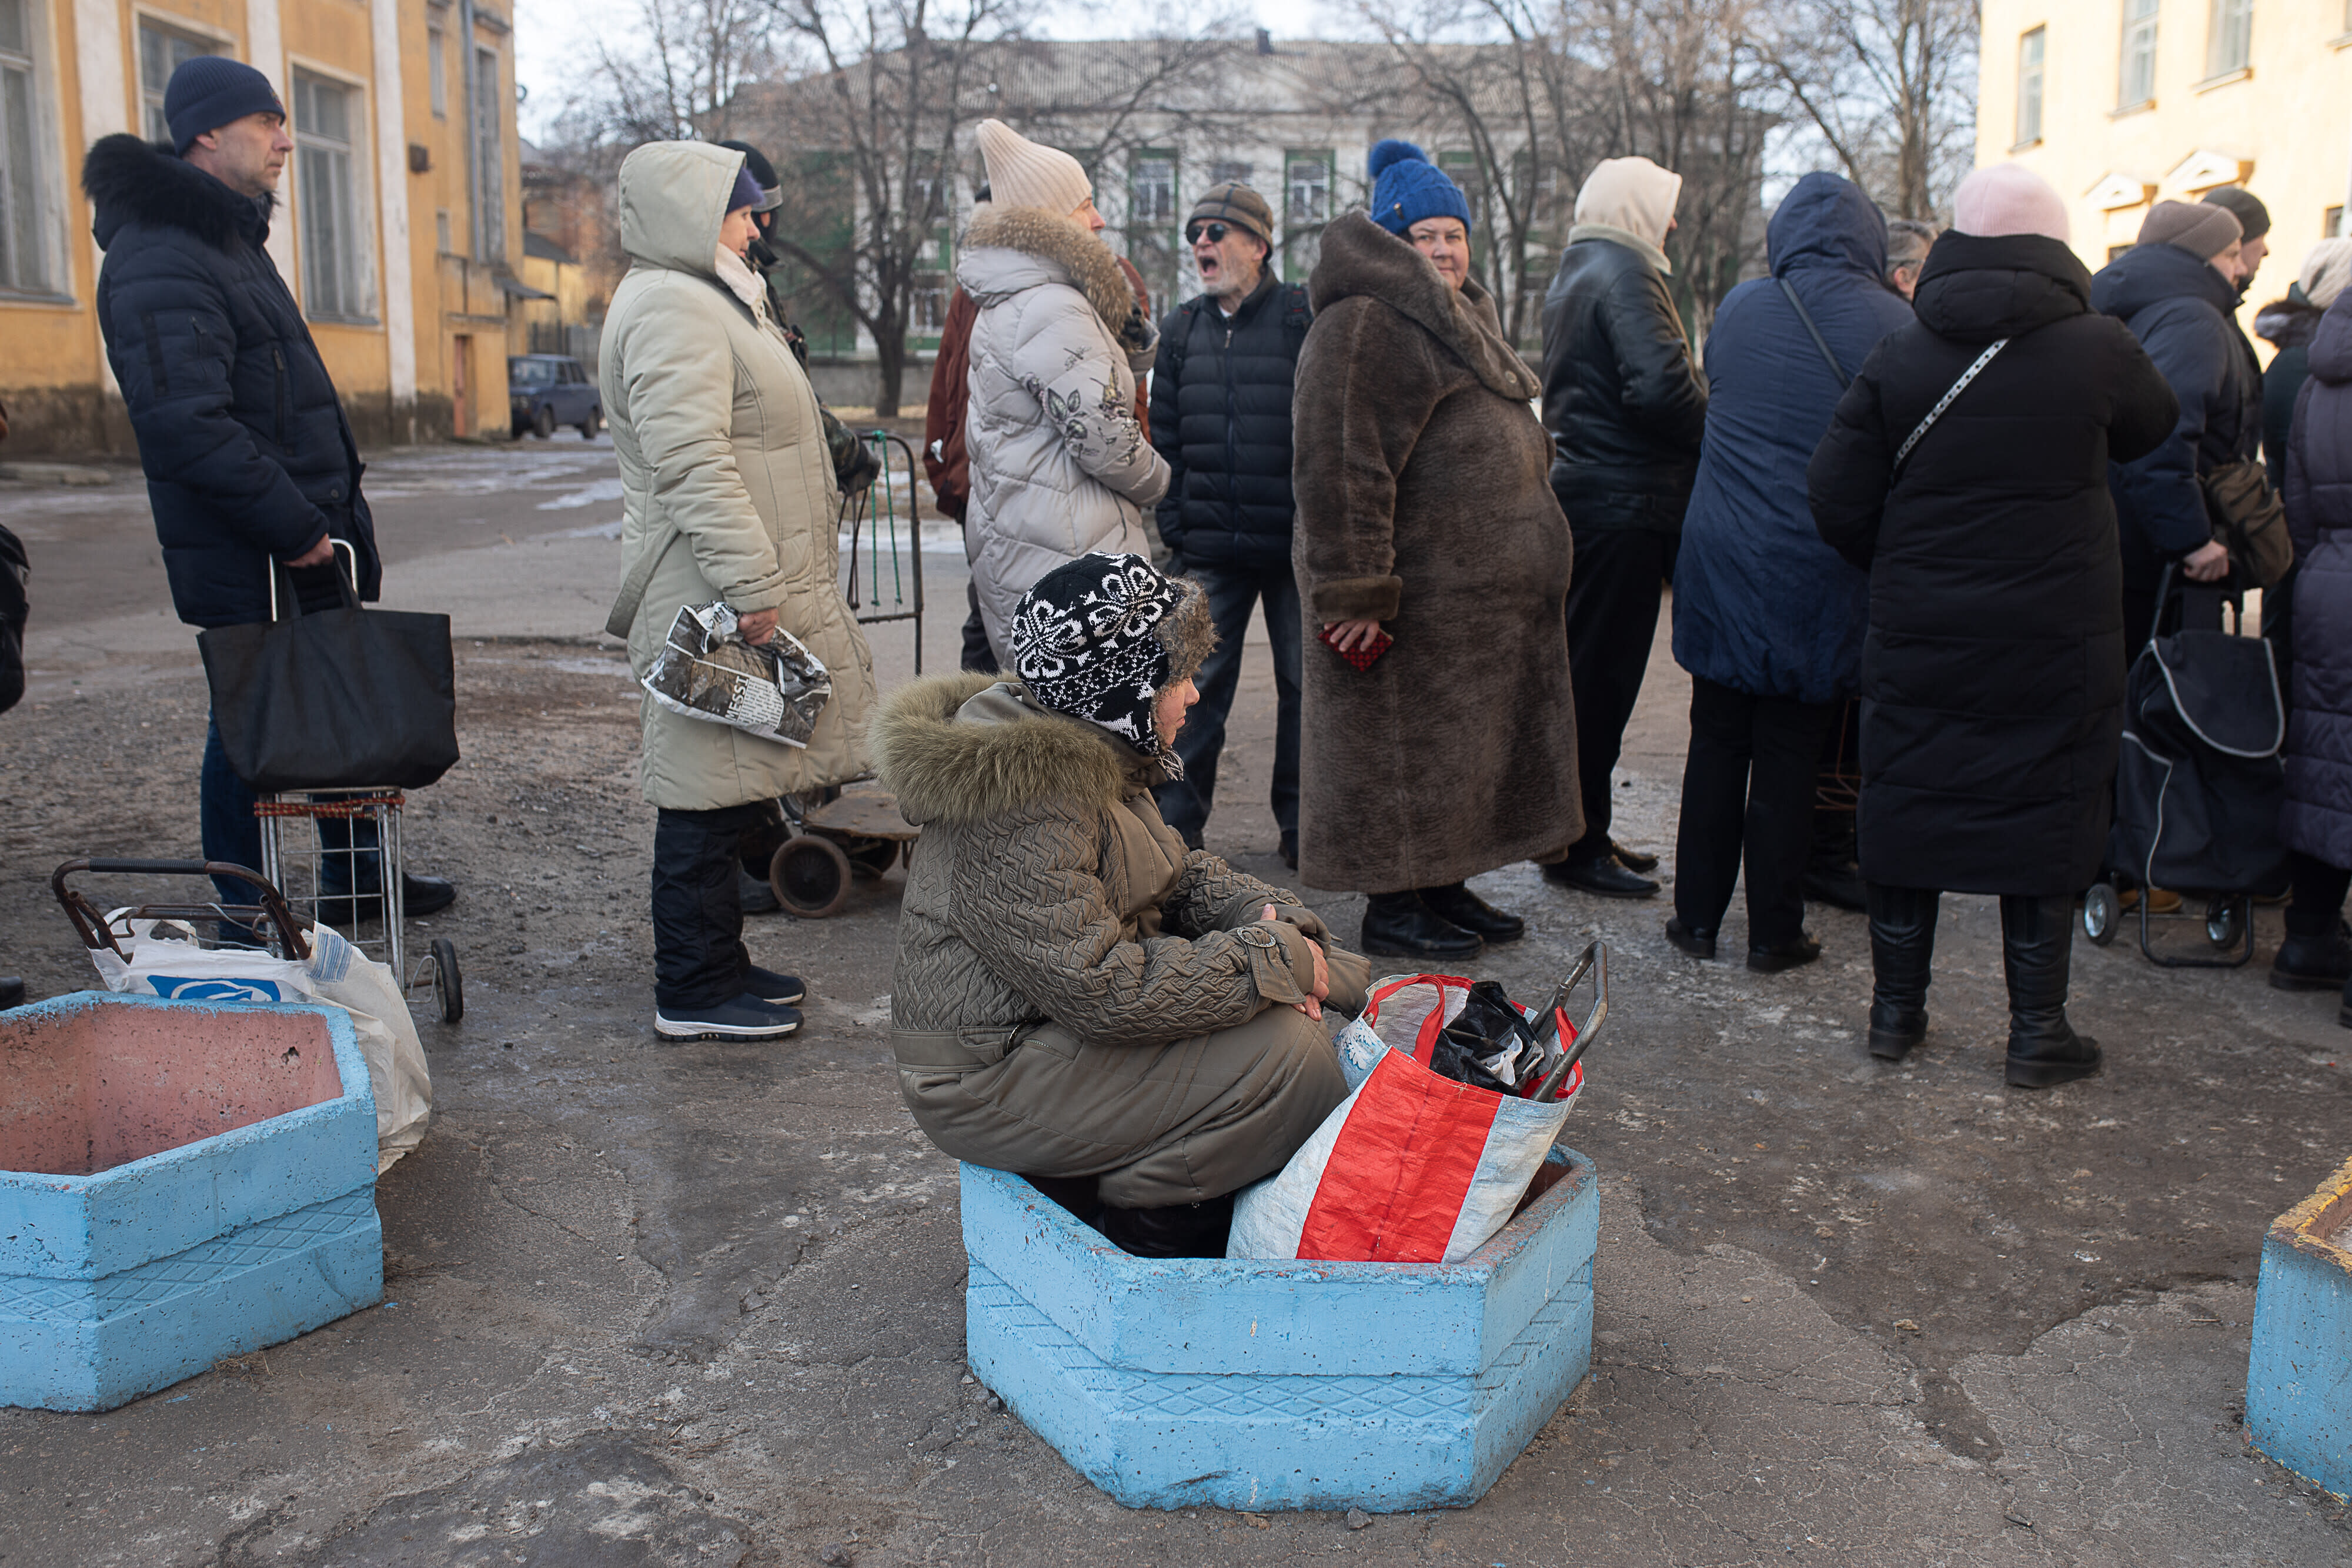 Finnland schickt 29 Millionen Euro an humanitärer Hilfe in die Ukraine